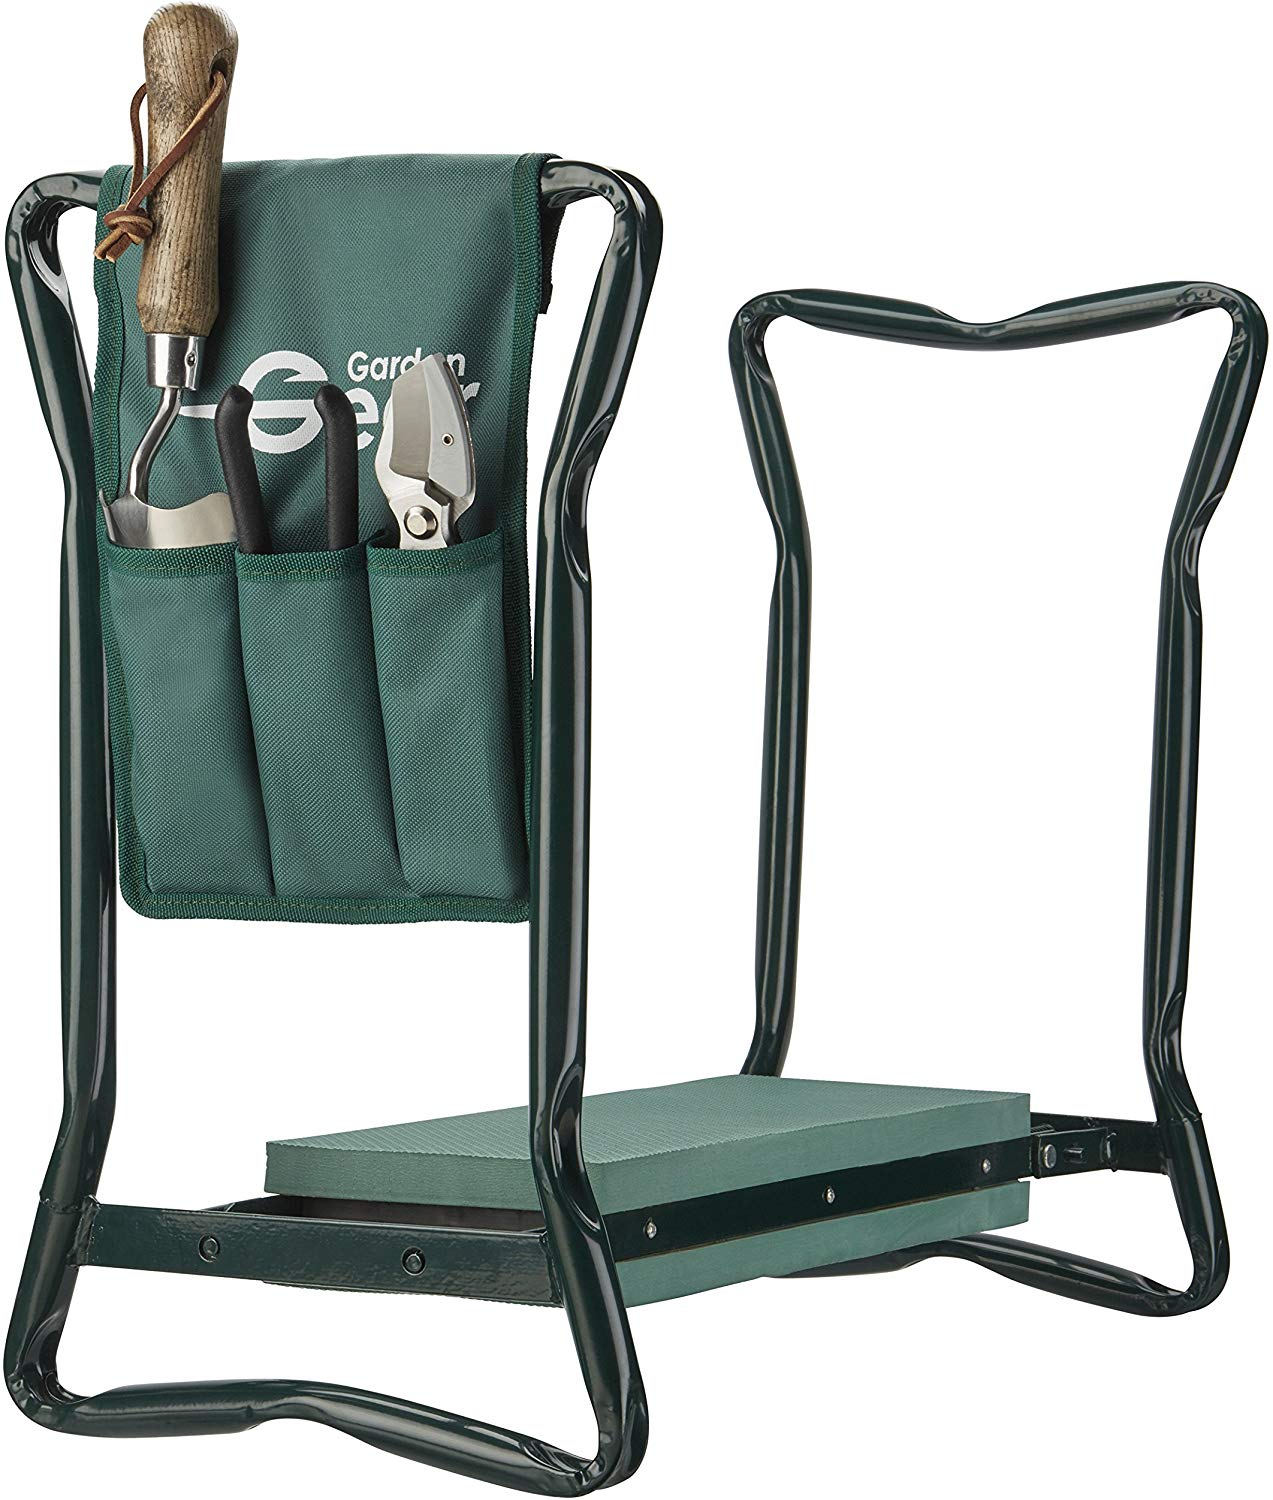 Garden Kneeler Folding Seat Stool with Handles & Tool Bag